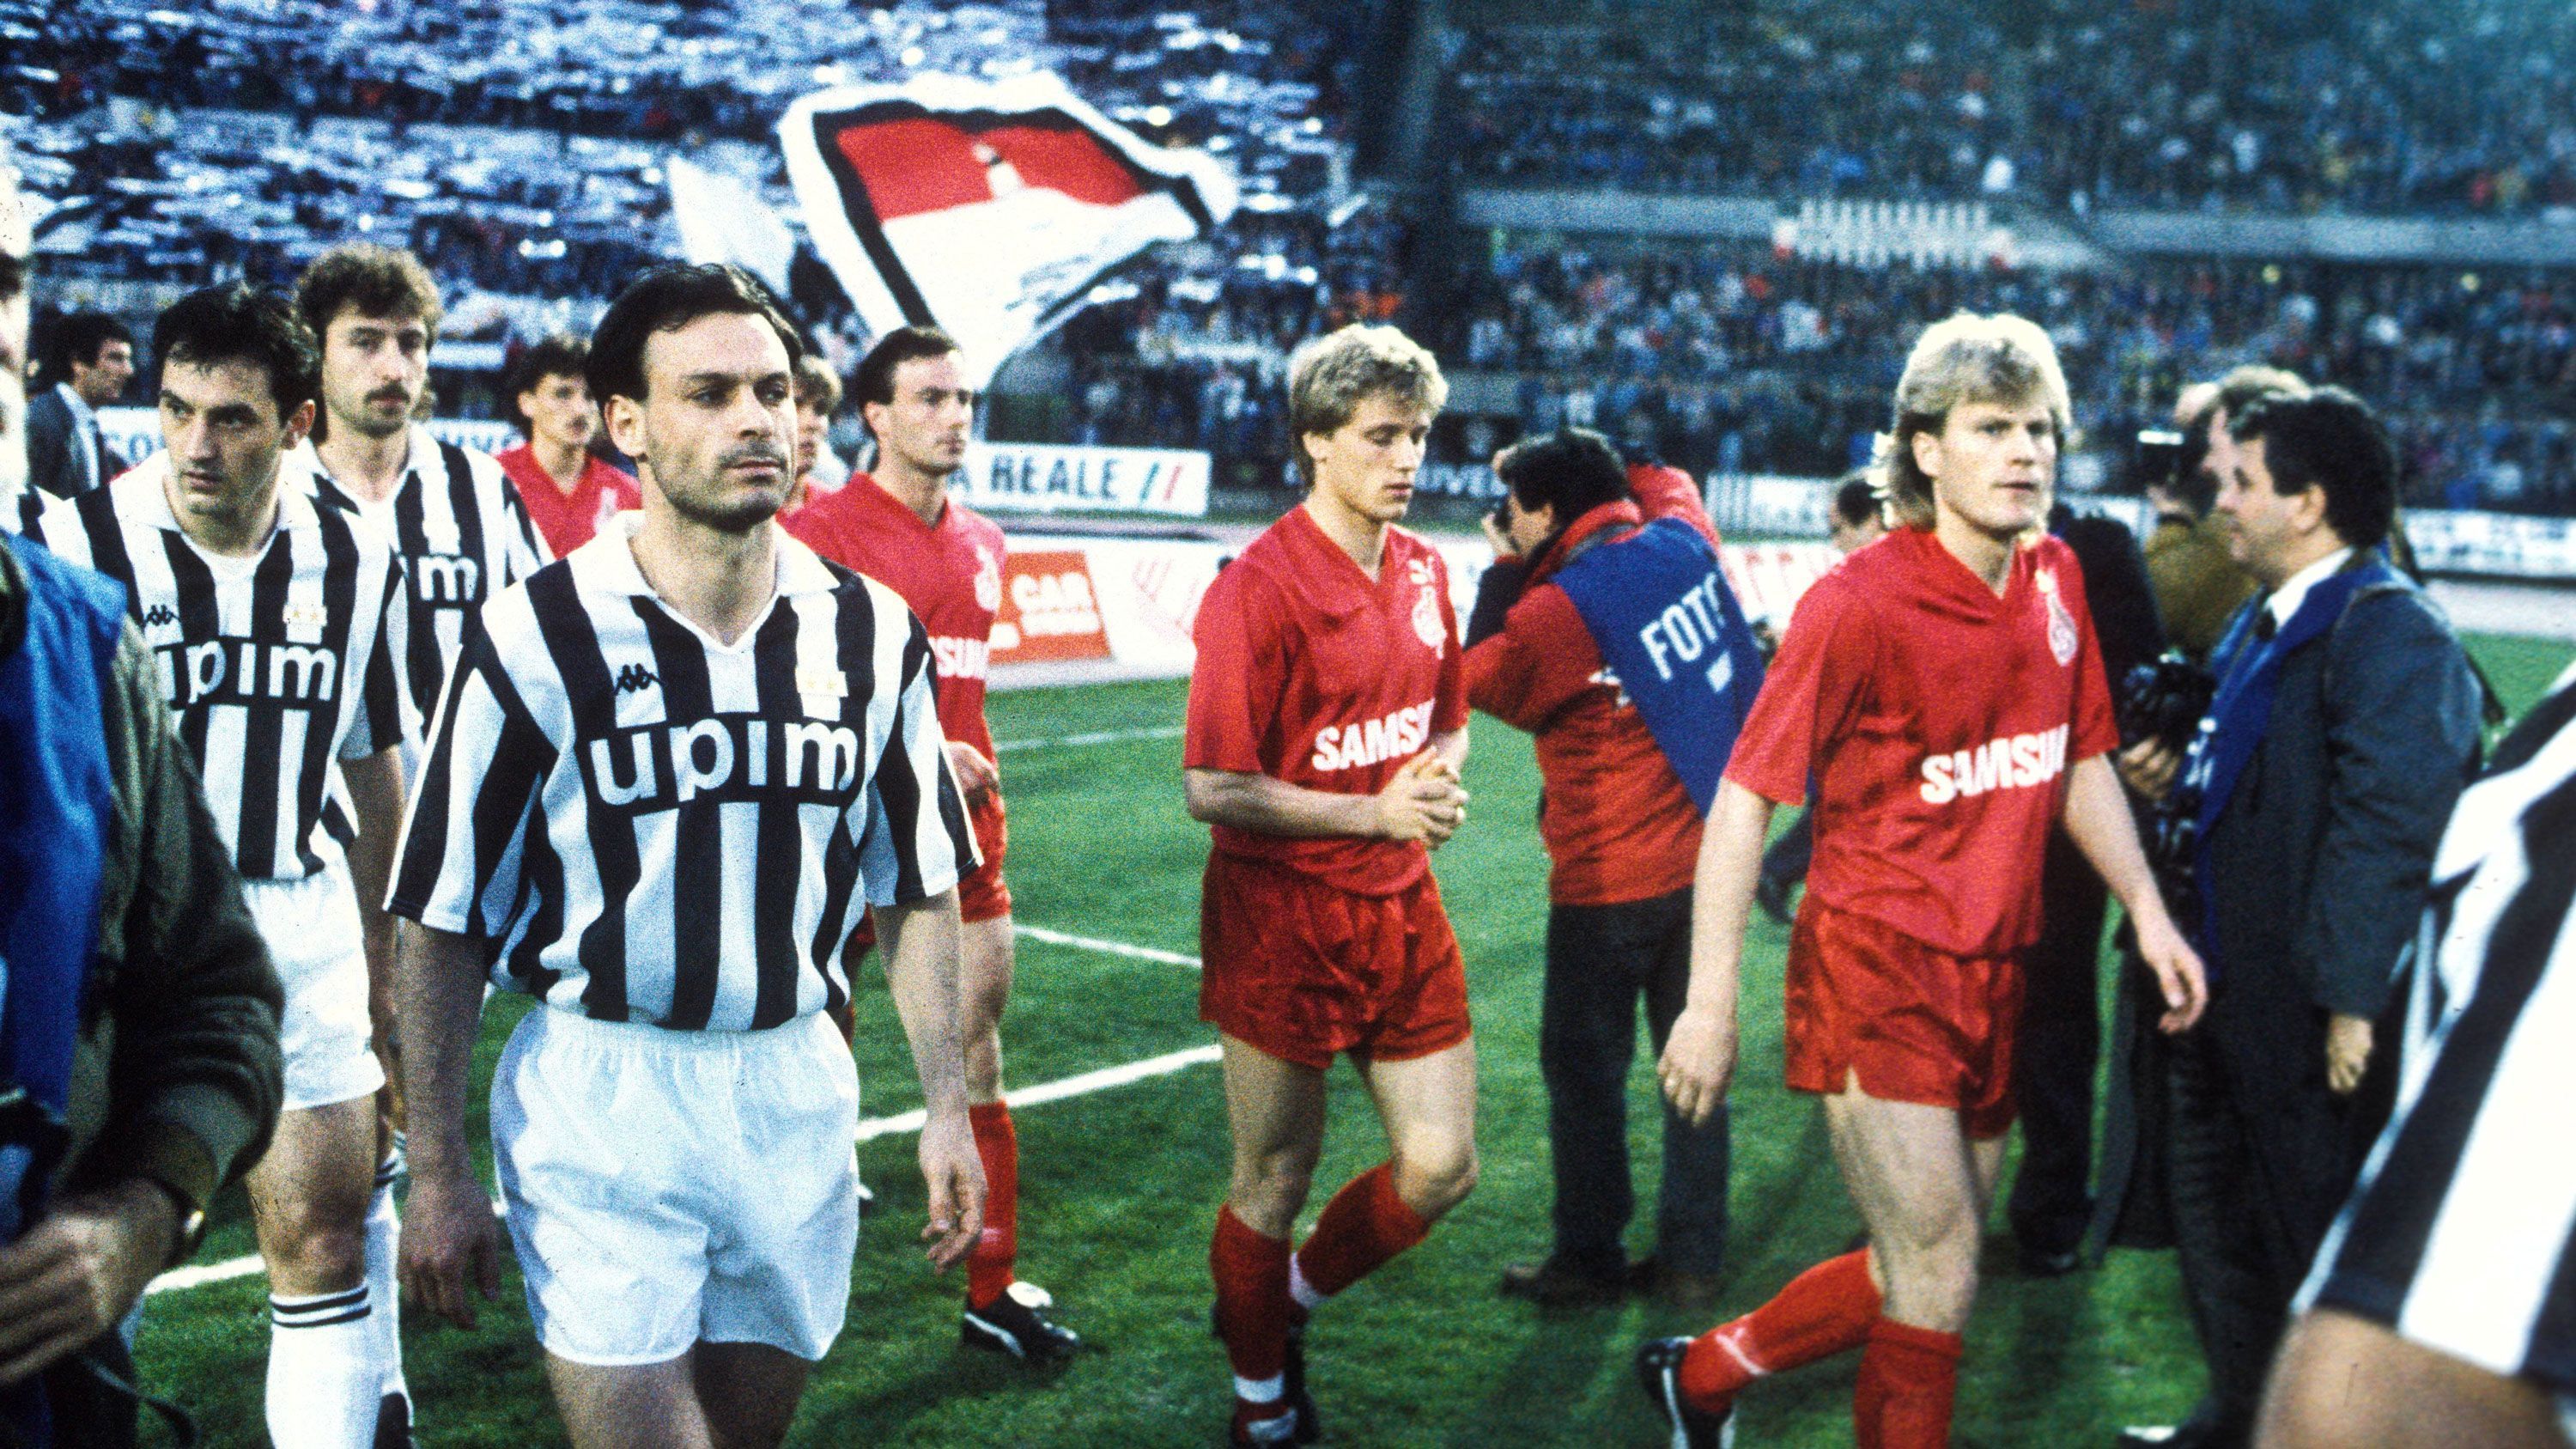 
                <strong>Saison 1989/90</strong><br>
                Zwei deutsch-italienische Duelle standen 1990 in den Halbfinals an, zwei Mal zogen die deutschen Teams den Kürzeren. Während der 1. FC Köln gegen den späteren Sieger Juventus Turin verlor, schied der SV Werder Bremen aufgrund der Auswärtstorregel gegen die AC Florenz aus. Immerhin ging der Titel für den besten Torjäger nach Deutschland, sowohl Falko Götz (Köln) als auch Karl-Heinz Riedle (Bremen) erzielten sechs Treffer.
              